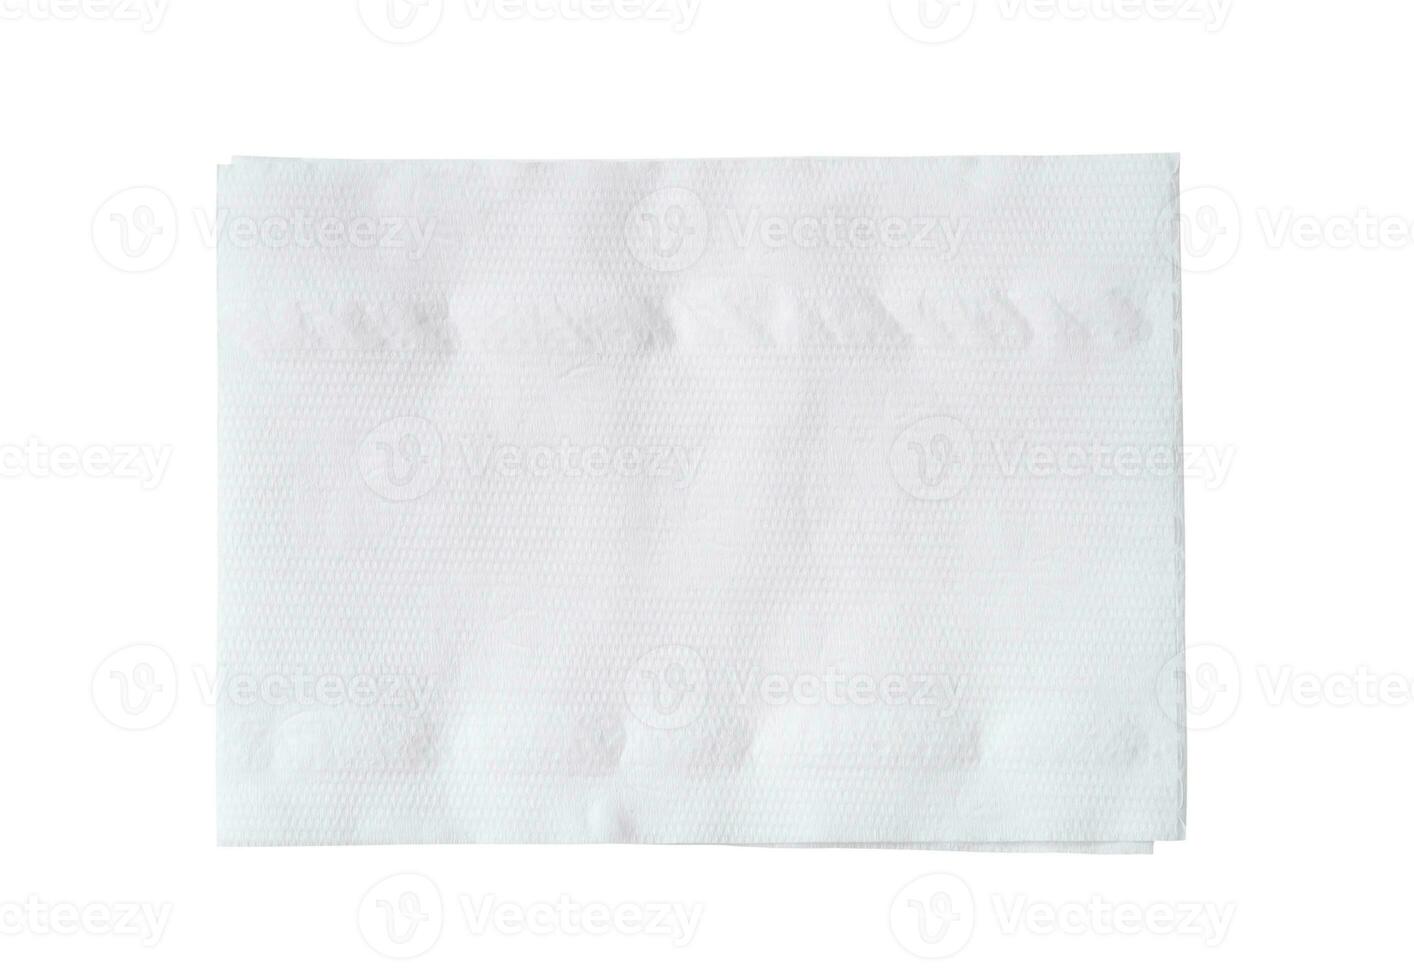 topp se av vikta vit vävnad papper eller servett isolerat på vit bakgrund med klippning väg. foto